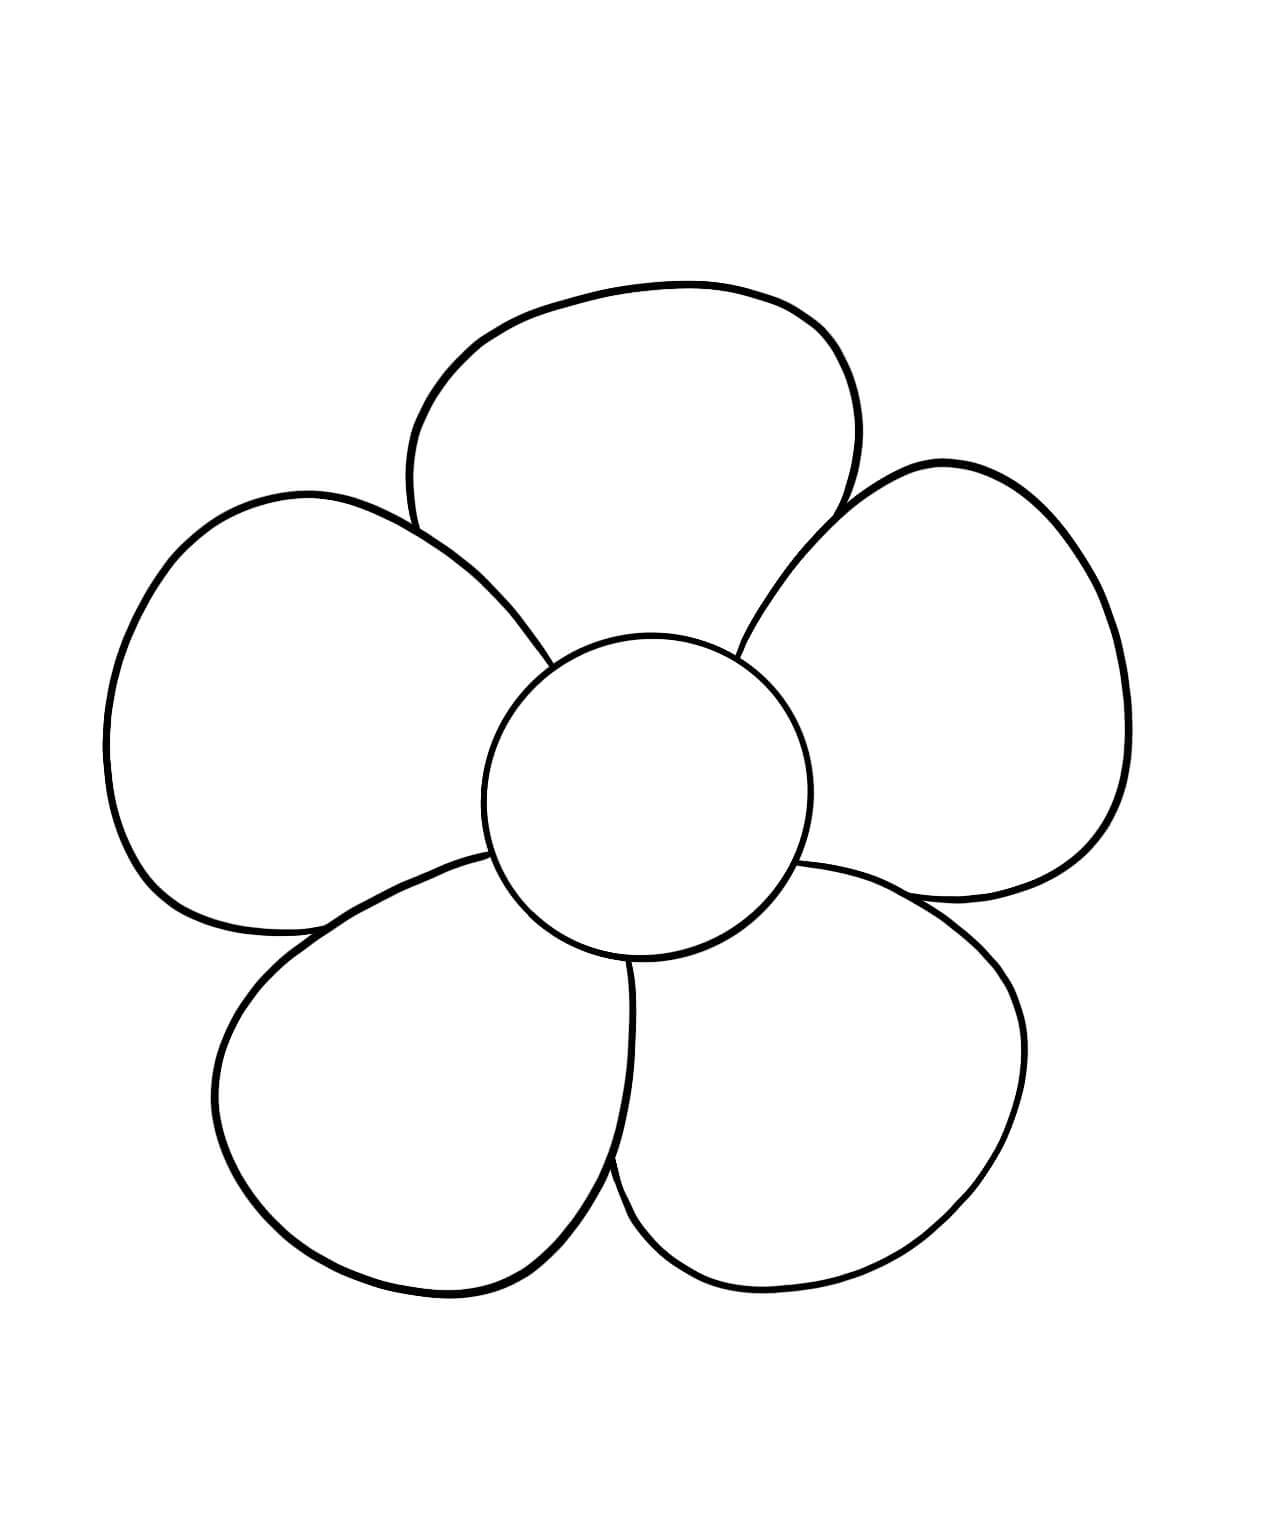 간단한 꽃 coloring page